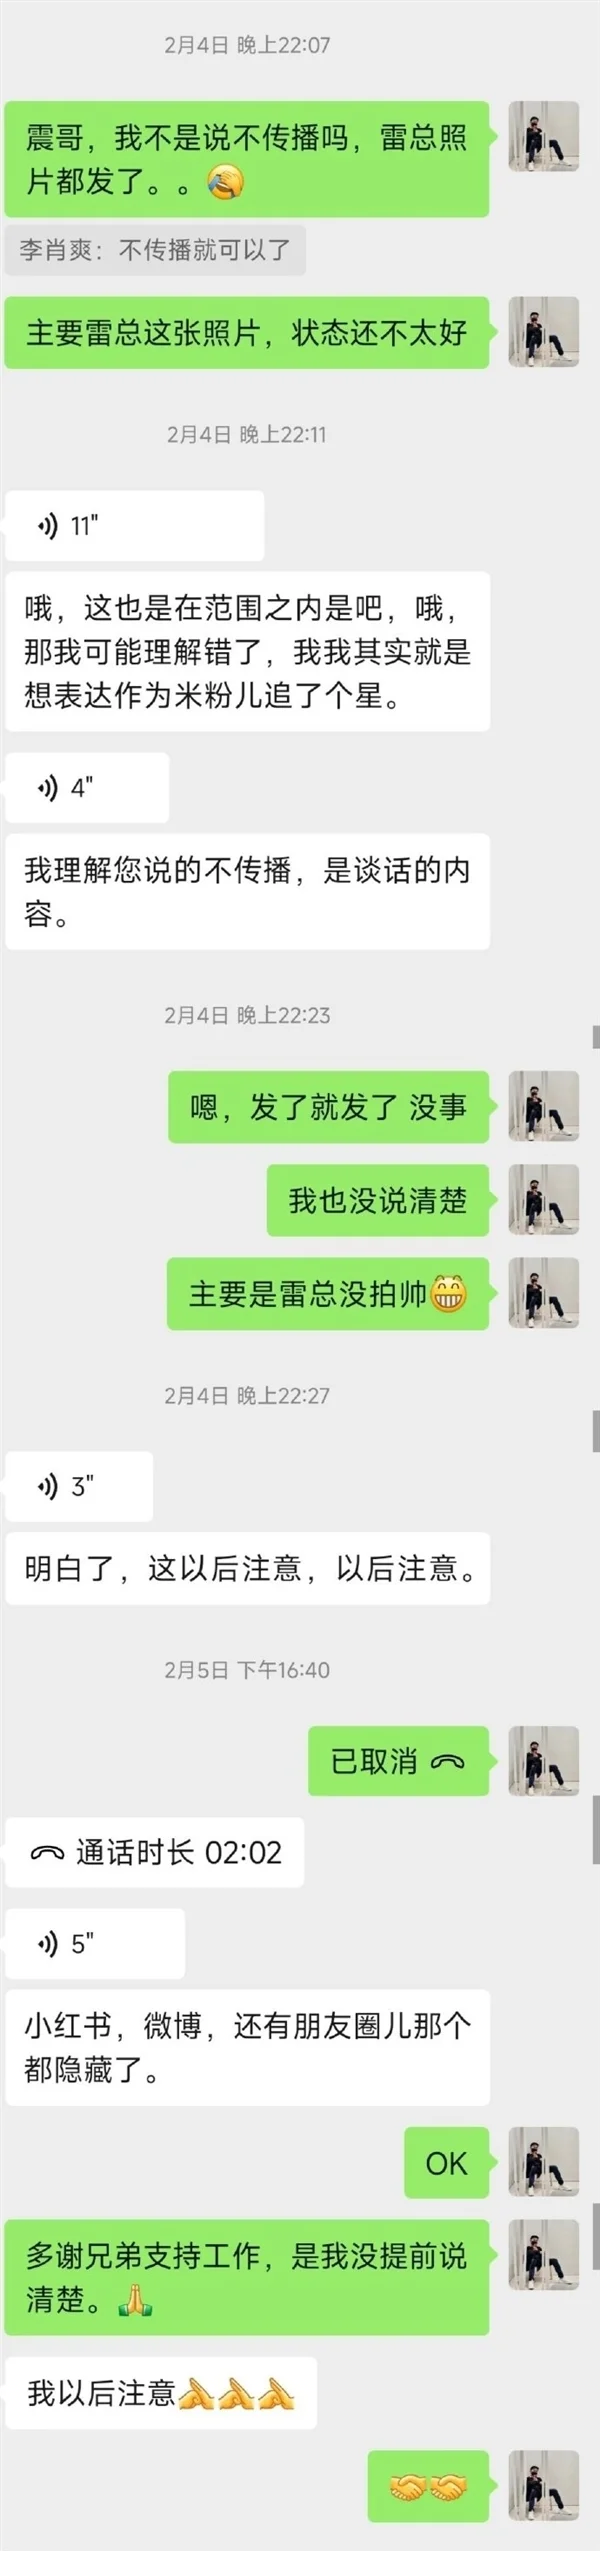 小米汽车副总裁李肖爽回应“陈震删雷军合影”：炒作这事实在匪夷所思